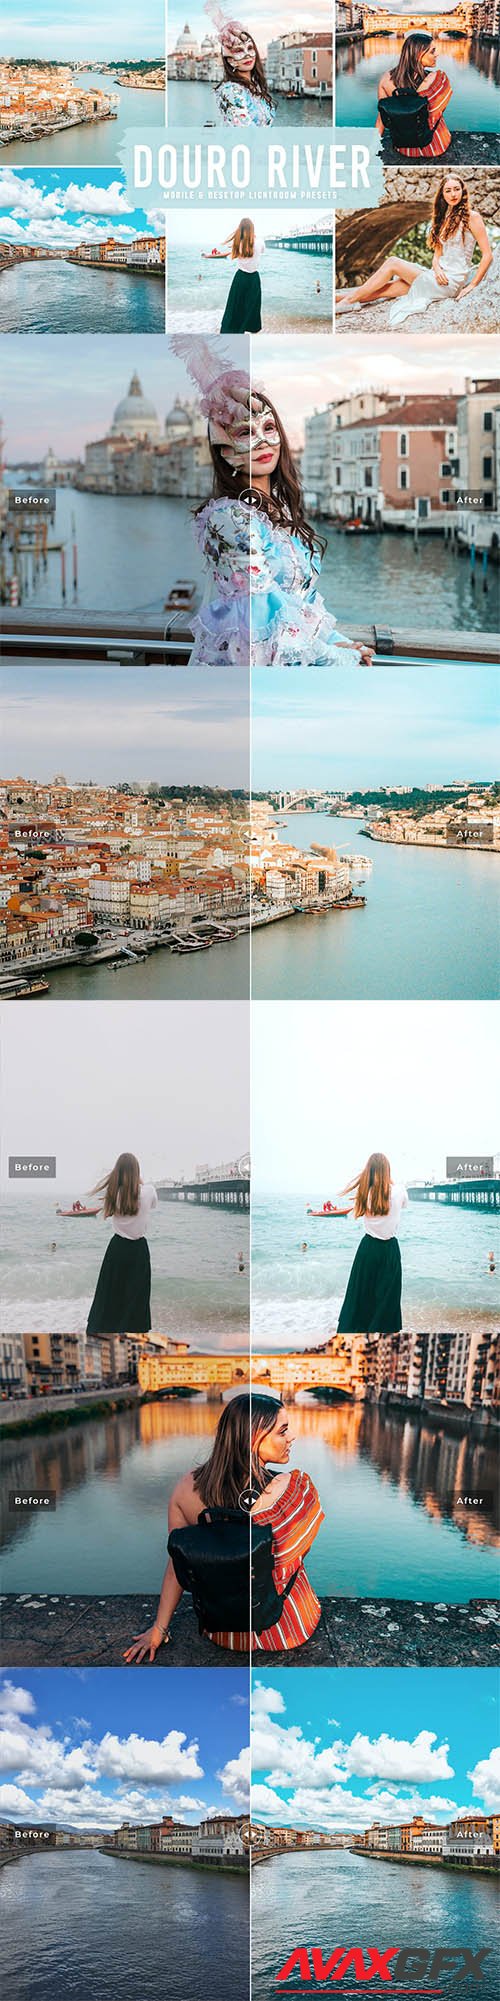 Douro River Mobile & Desktop Lightroom Presets